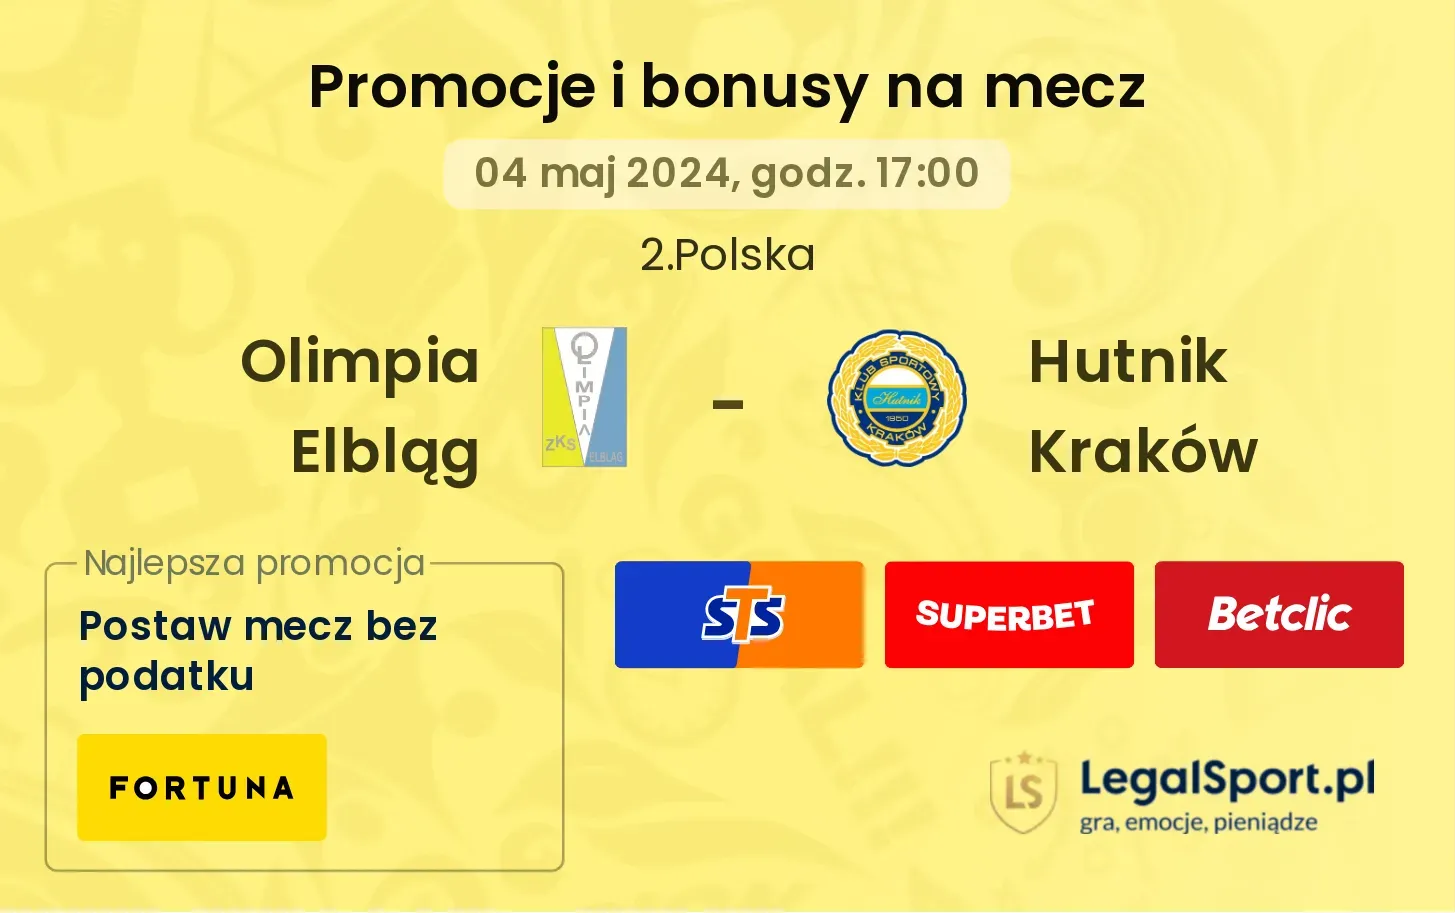 Olimpia Elbląg - Hutnik Kraków promocje bonusy na mecz